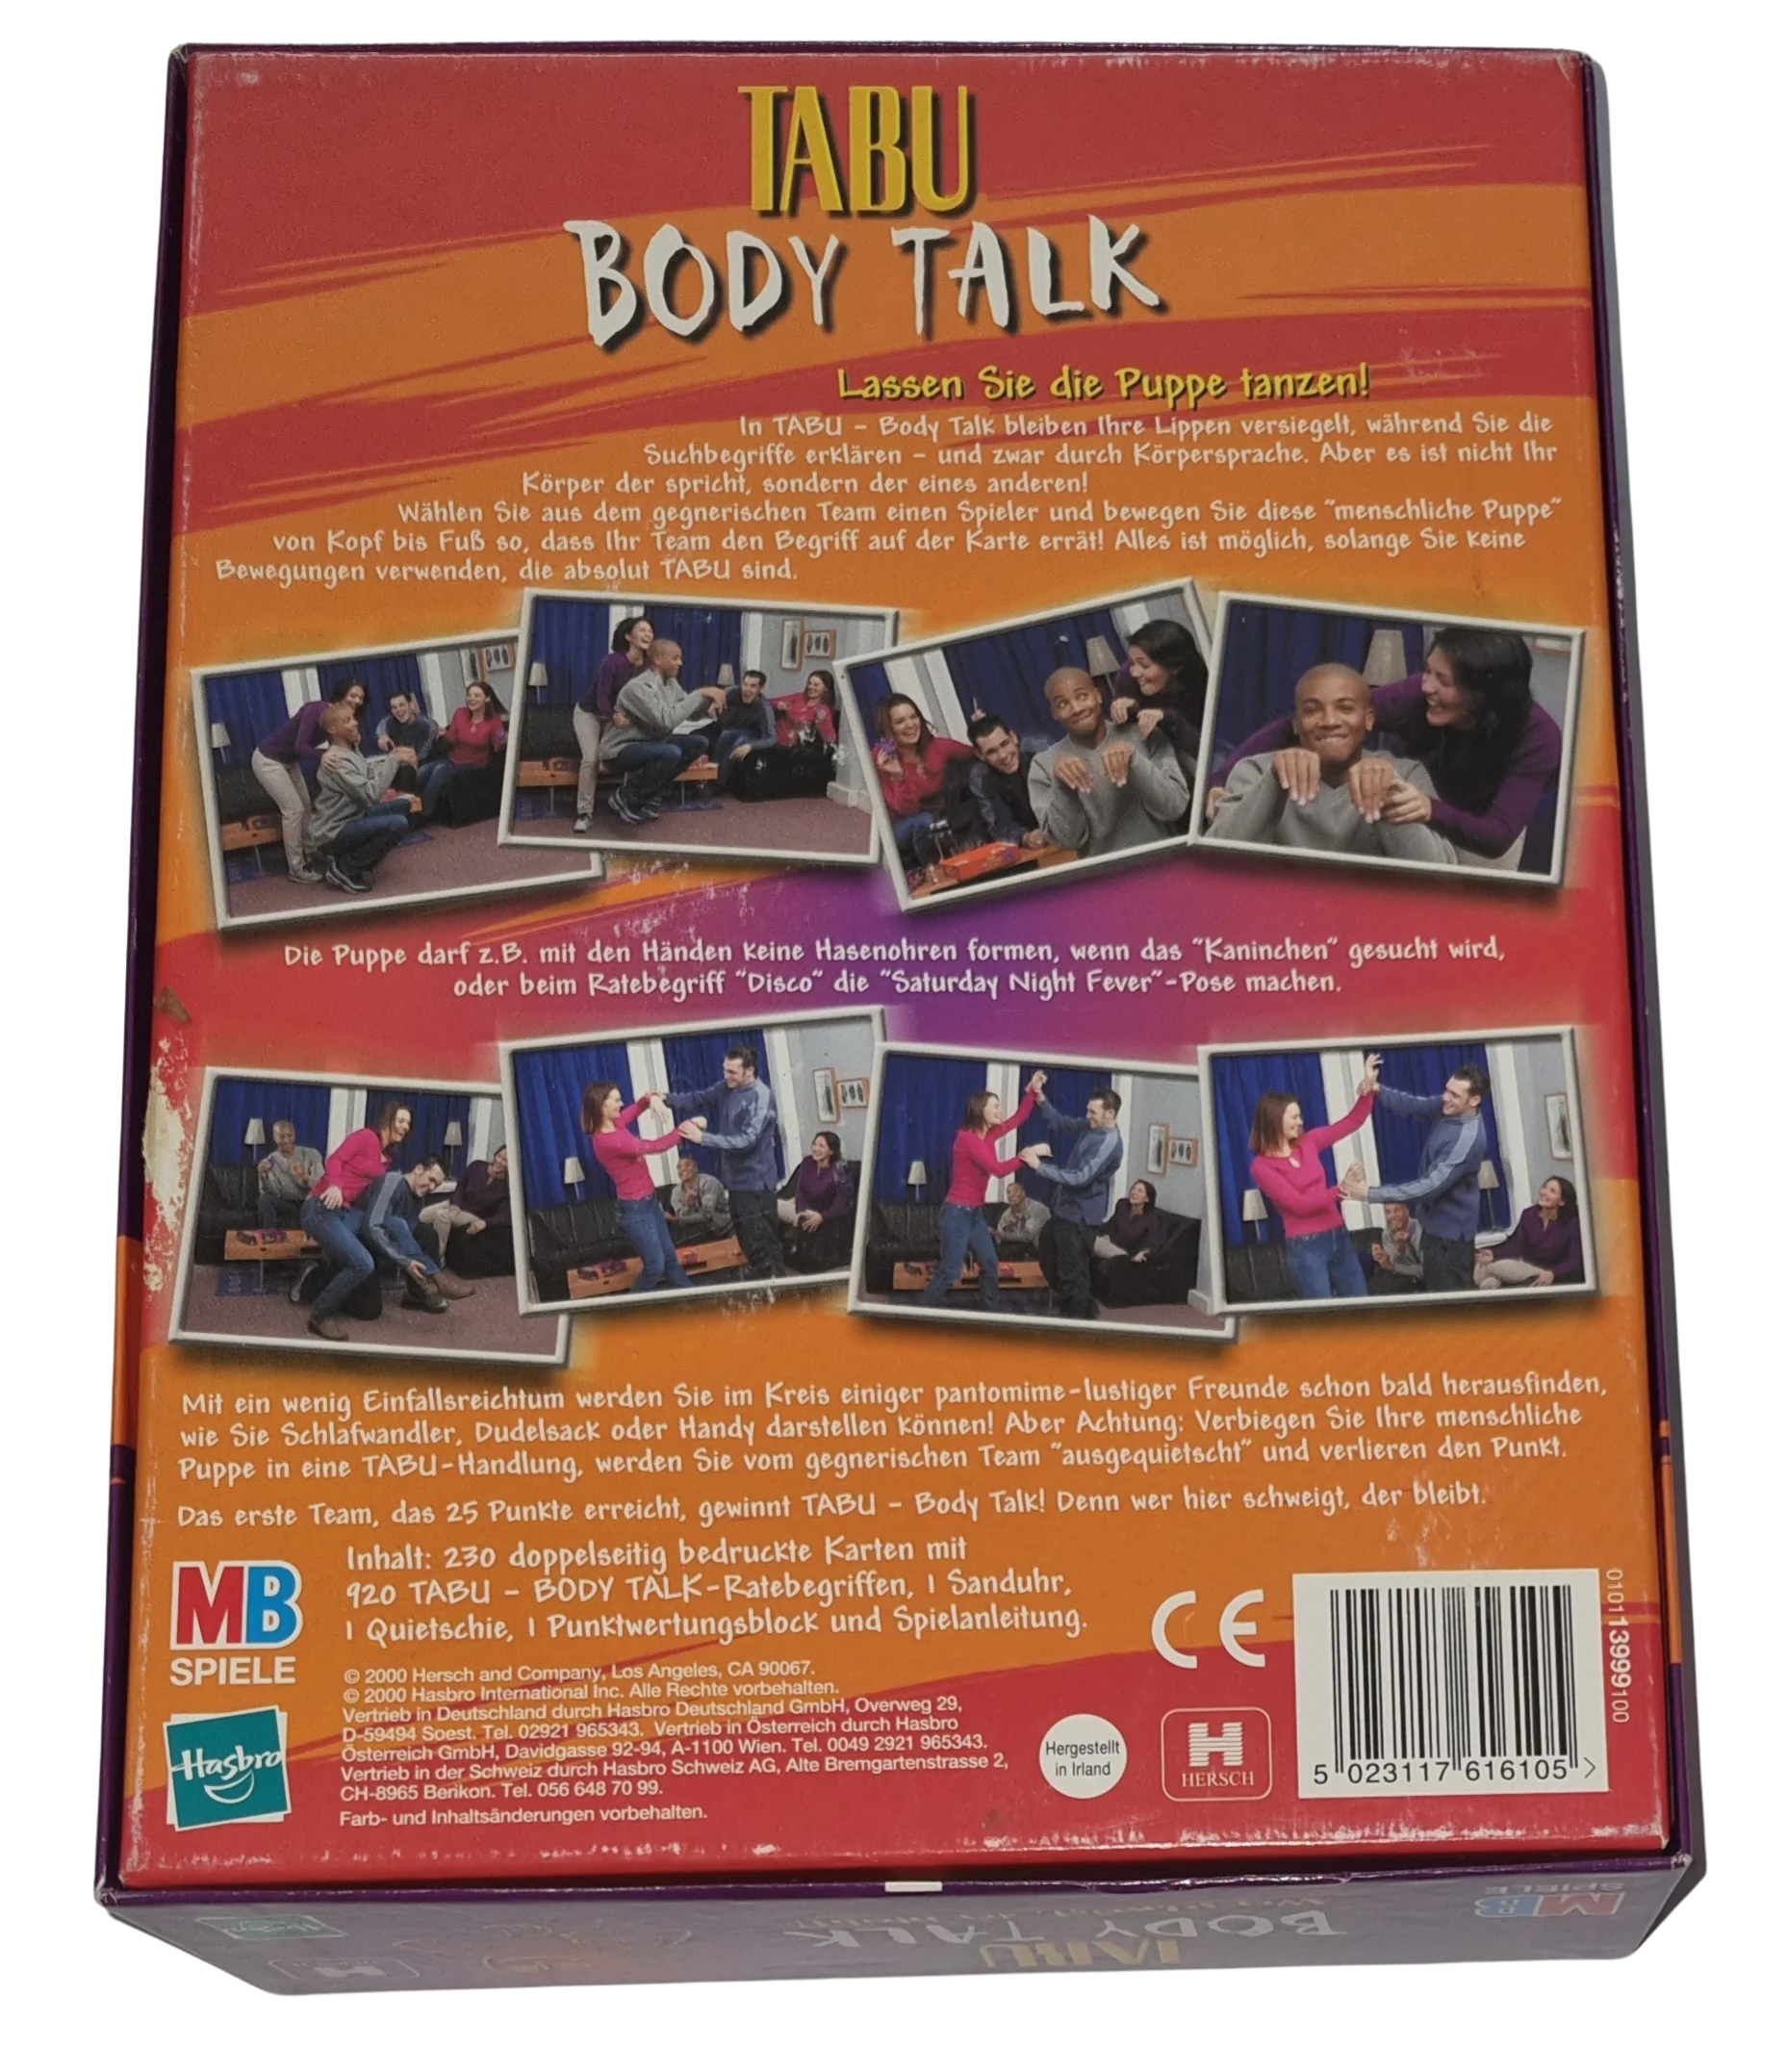 MB Tabu Body Talk